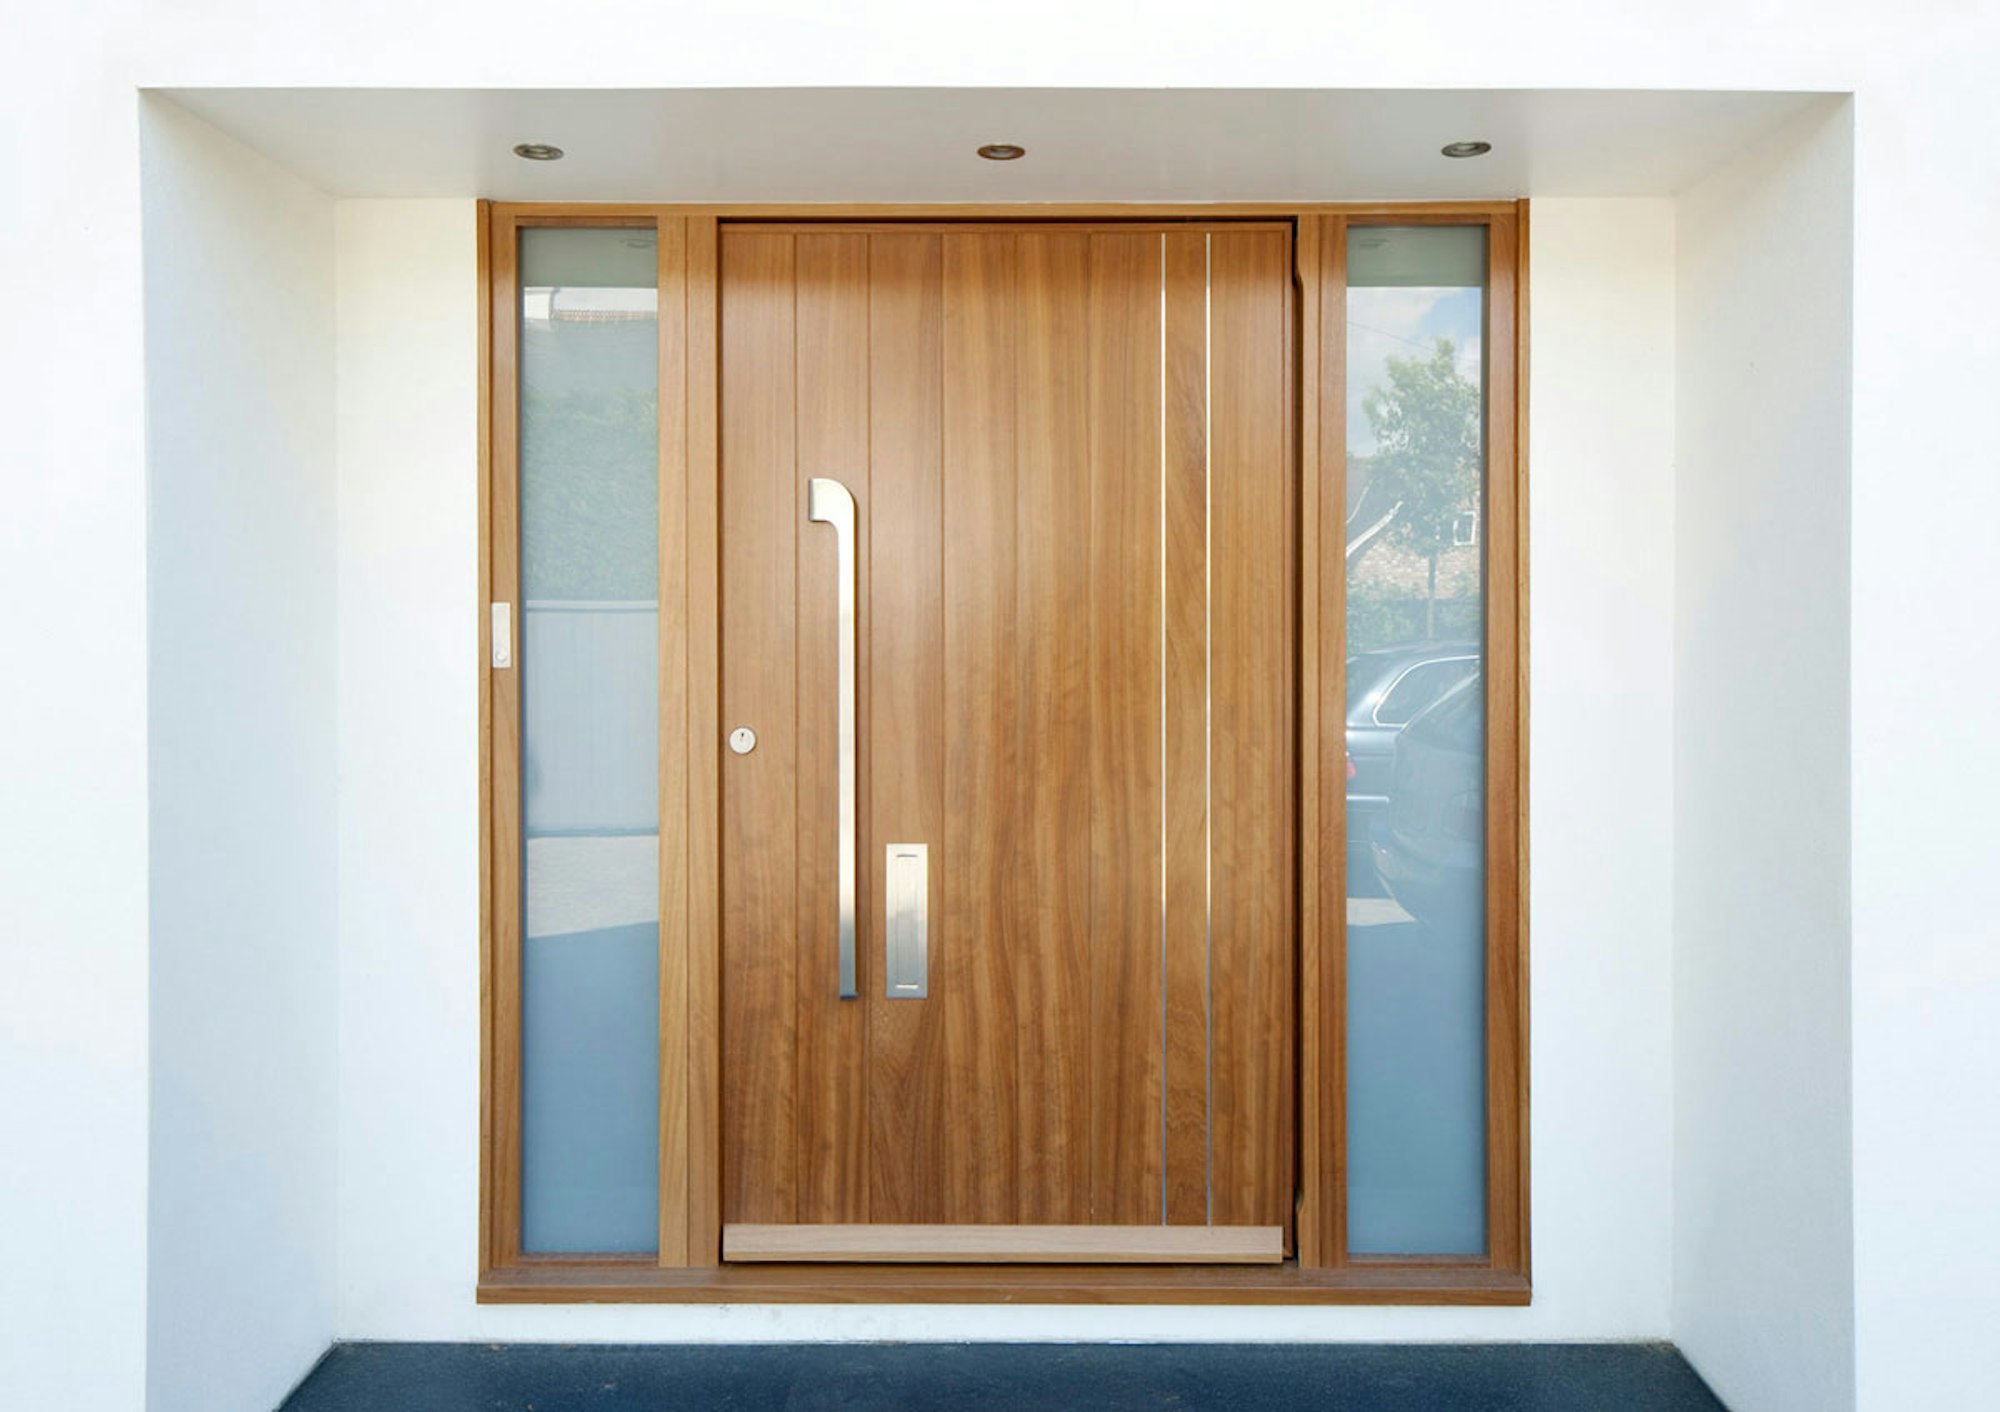 Iroko wood | Stainless steel detail | Porto v front door